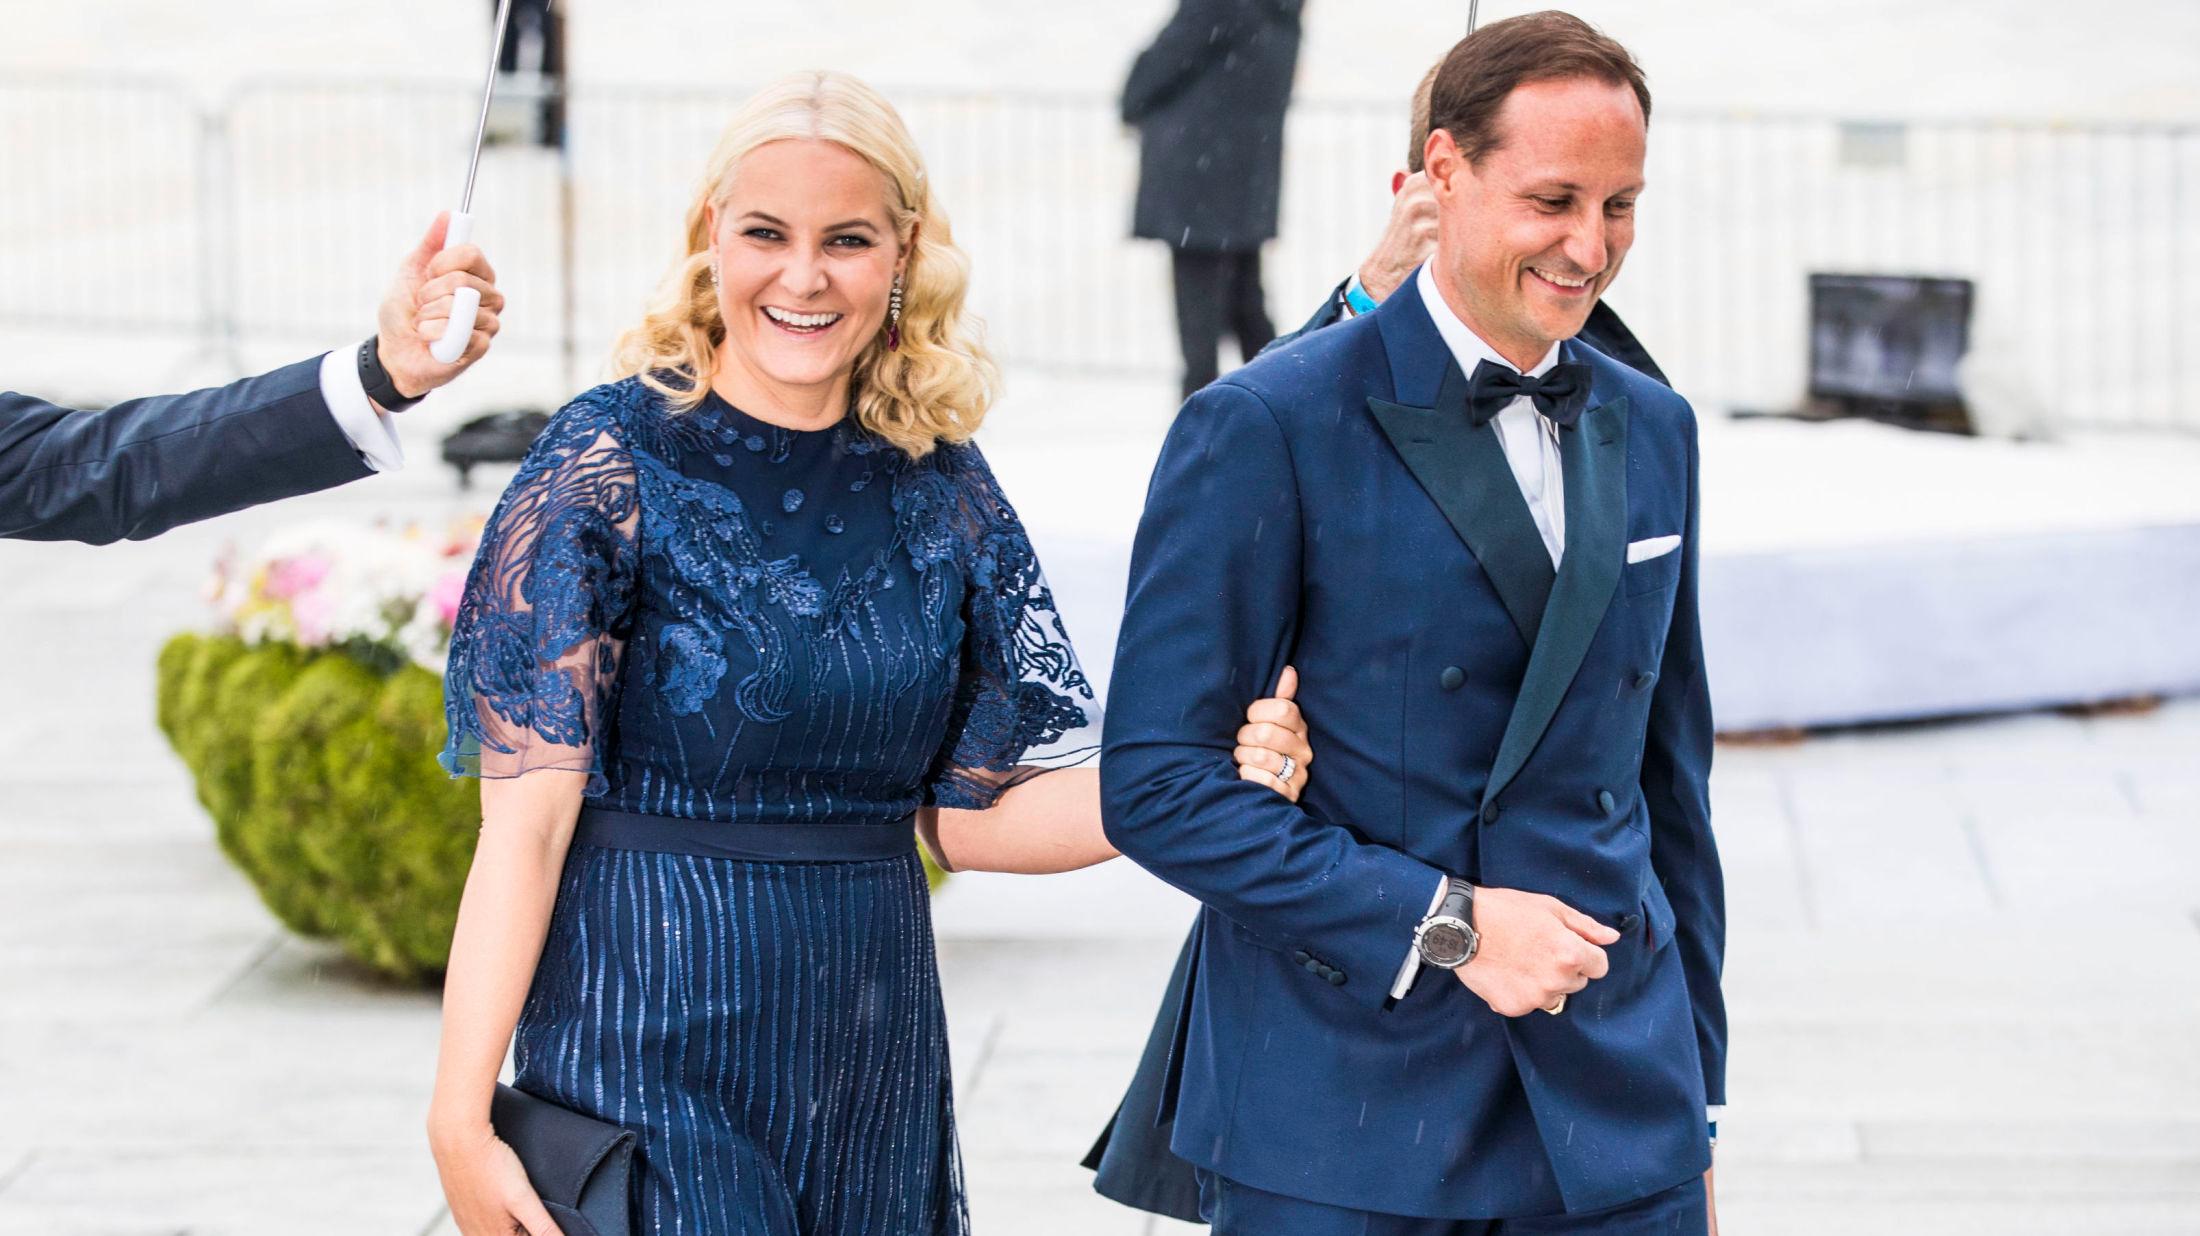 JETSET: Kronprinsesse Mette-Marit og kronprins Haakon har sterke forbindelser i den internasjonale moteeliten. Her avbildet i forbindelse med kongeparets 80-års feiring i Operaen. Foto: NTB scanpix